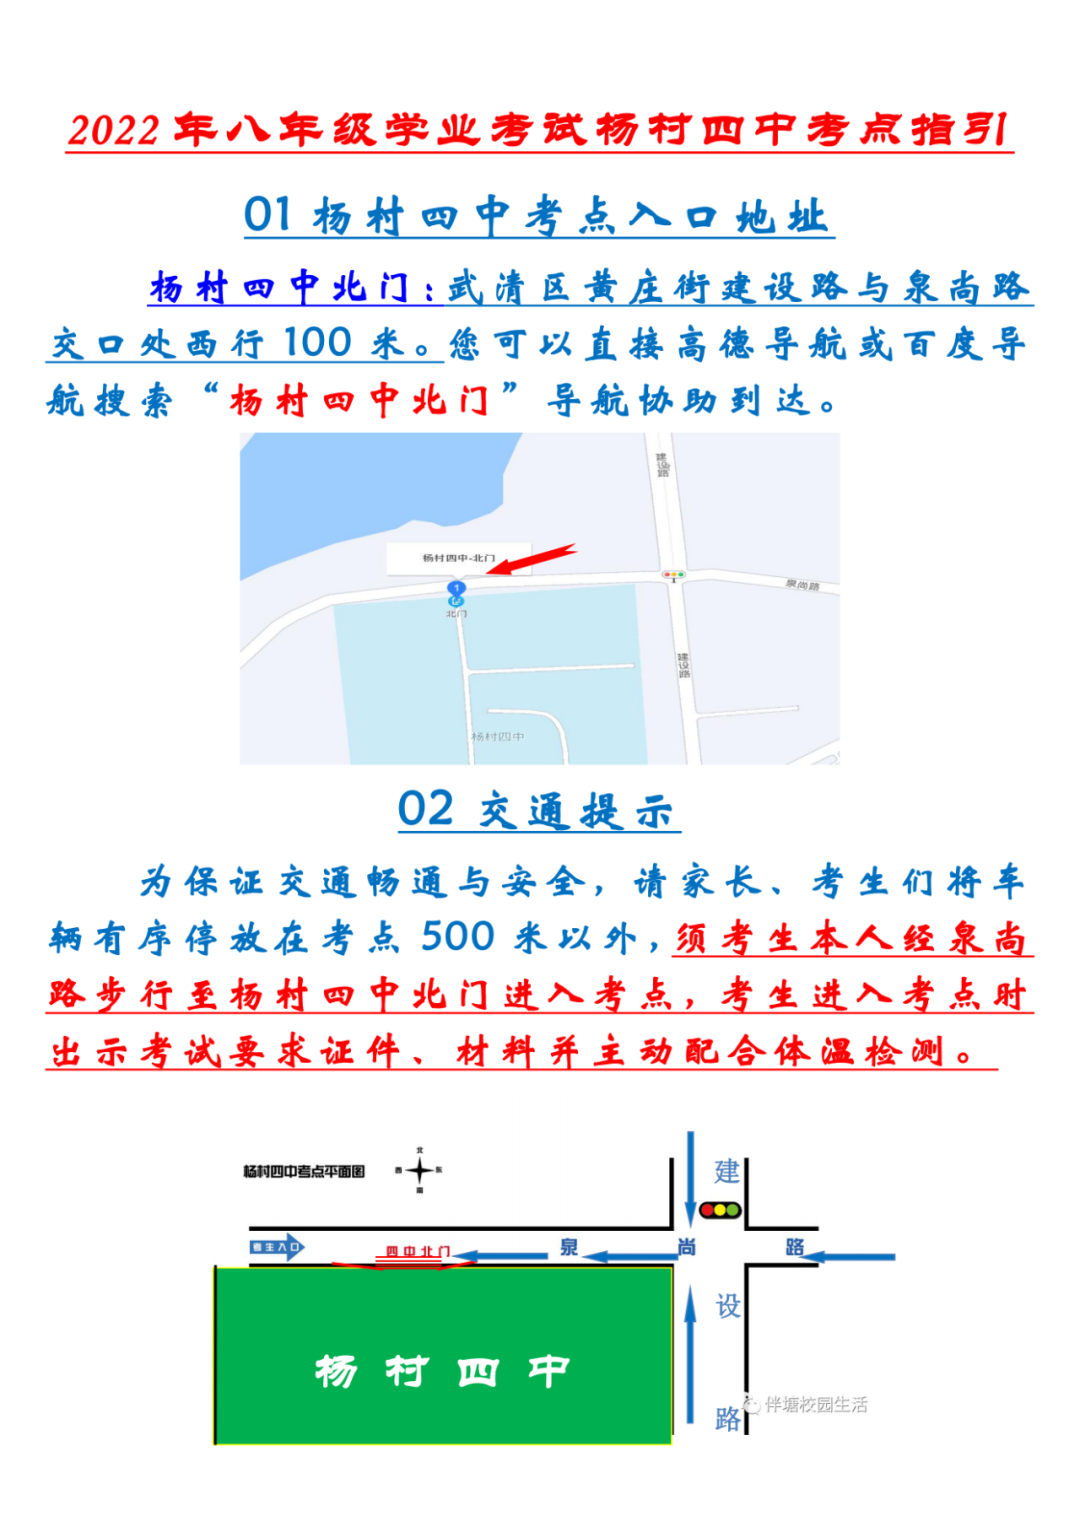 2022年天津武清区中考考点考场示意图(图43)